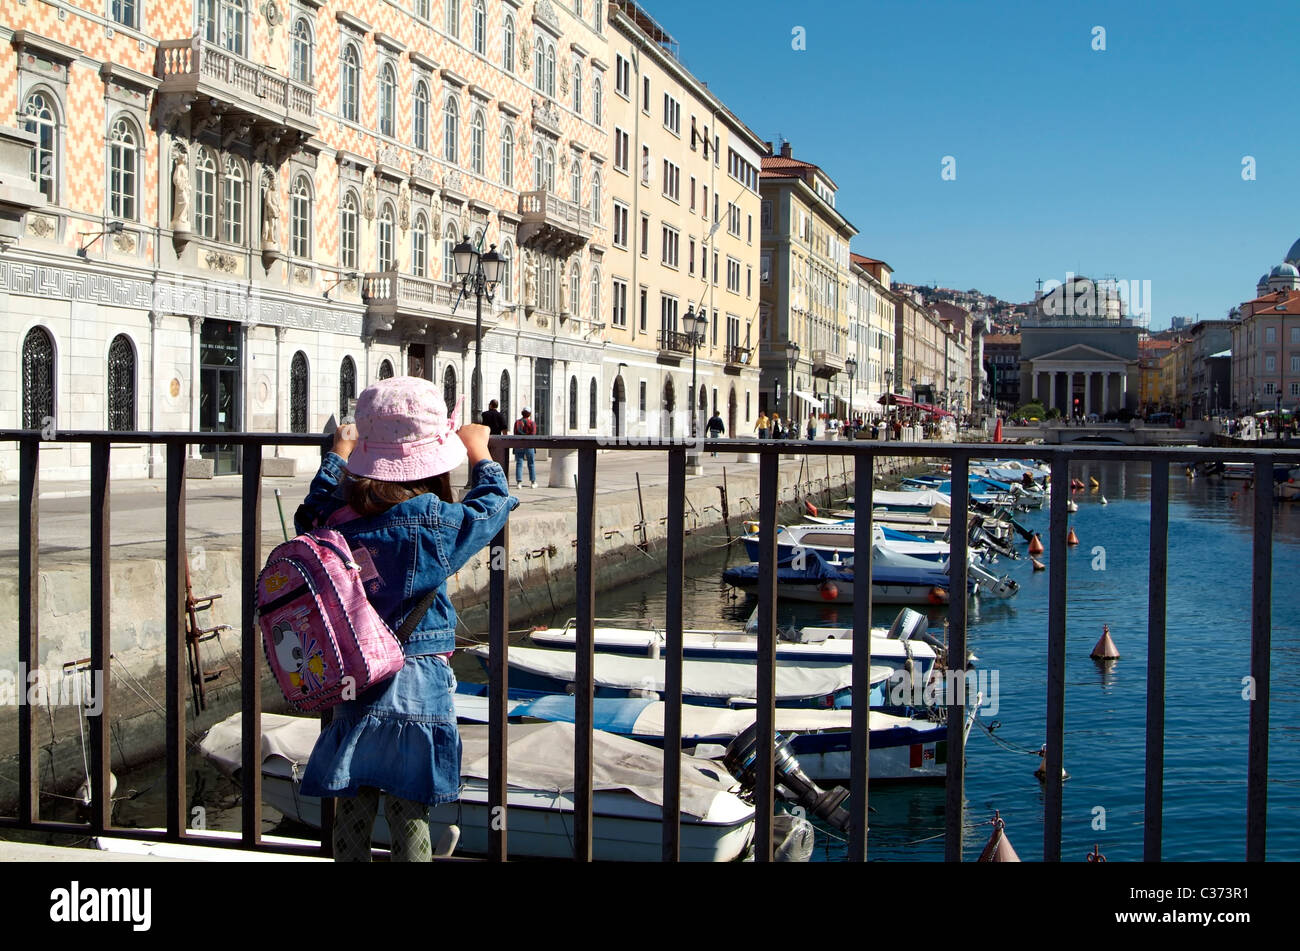 Ein einsame kleine Mädchen freut sich auf einige Boote in einem Kanal an der Adria. Stockfoto